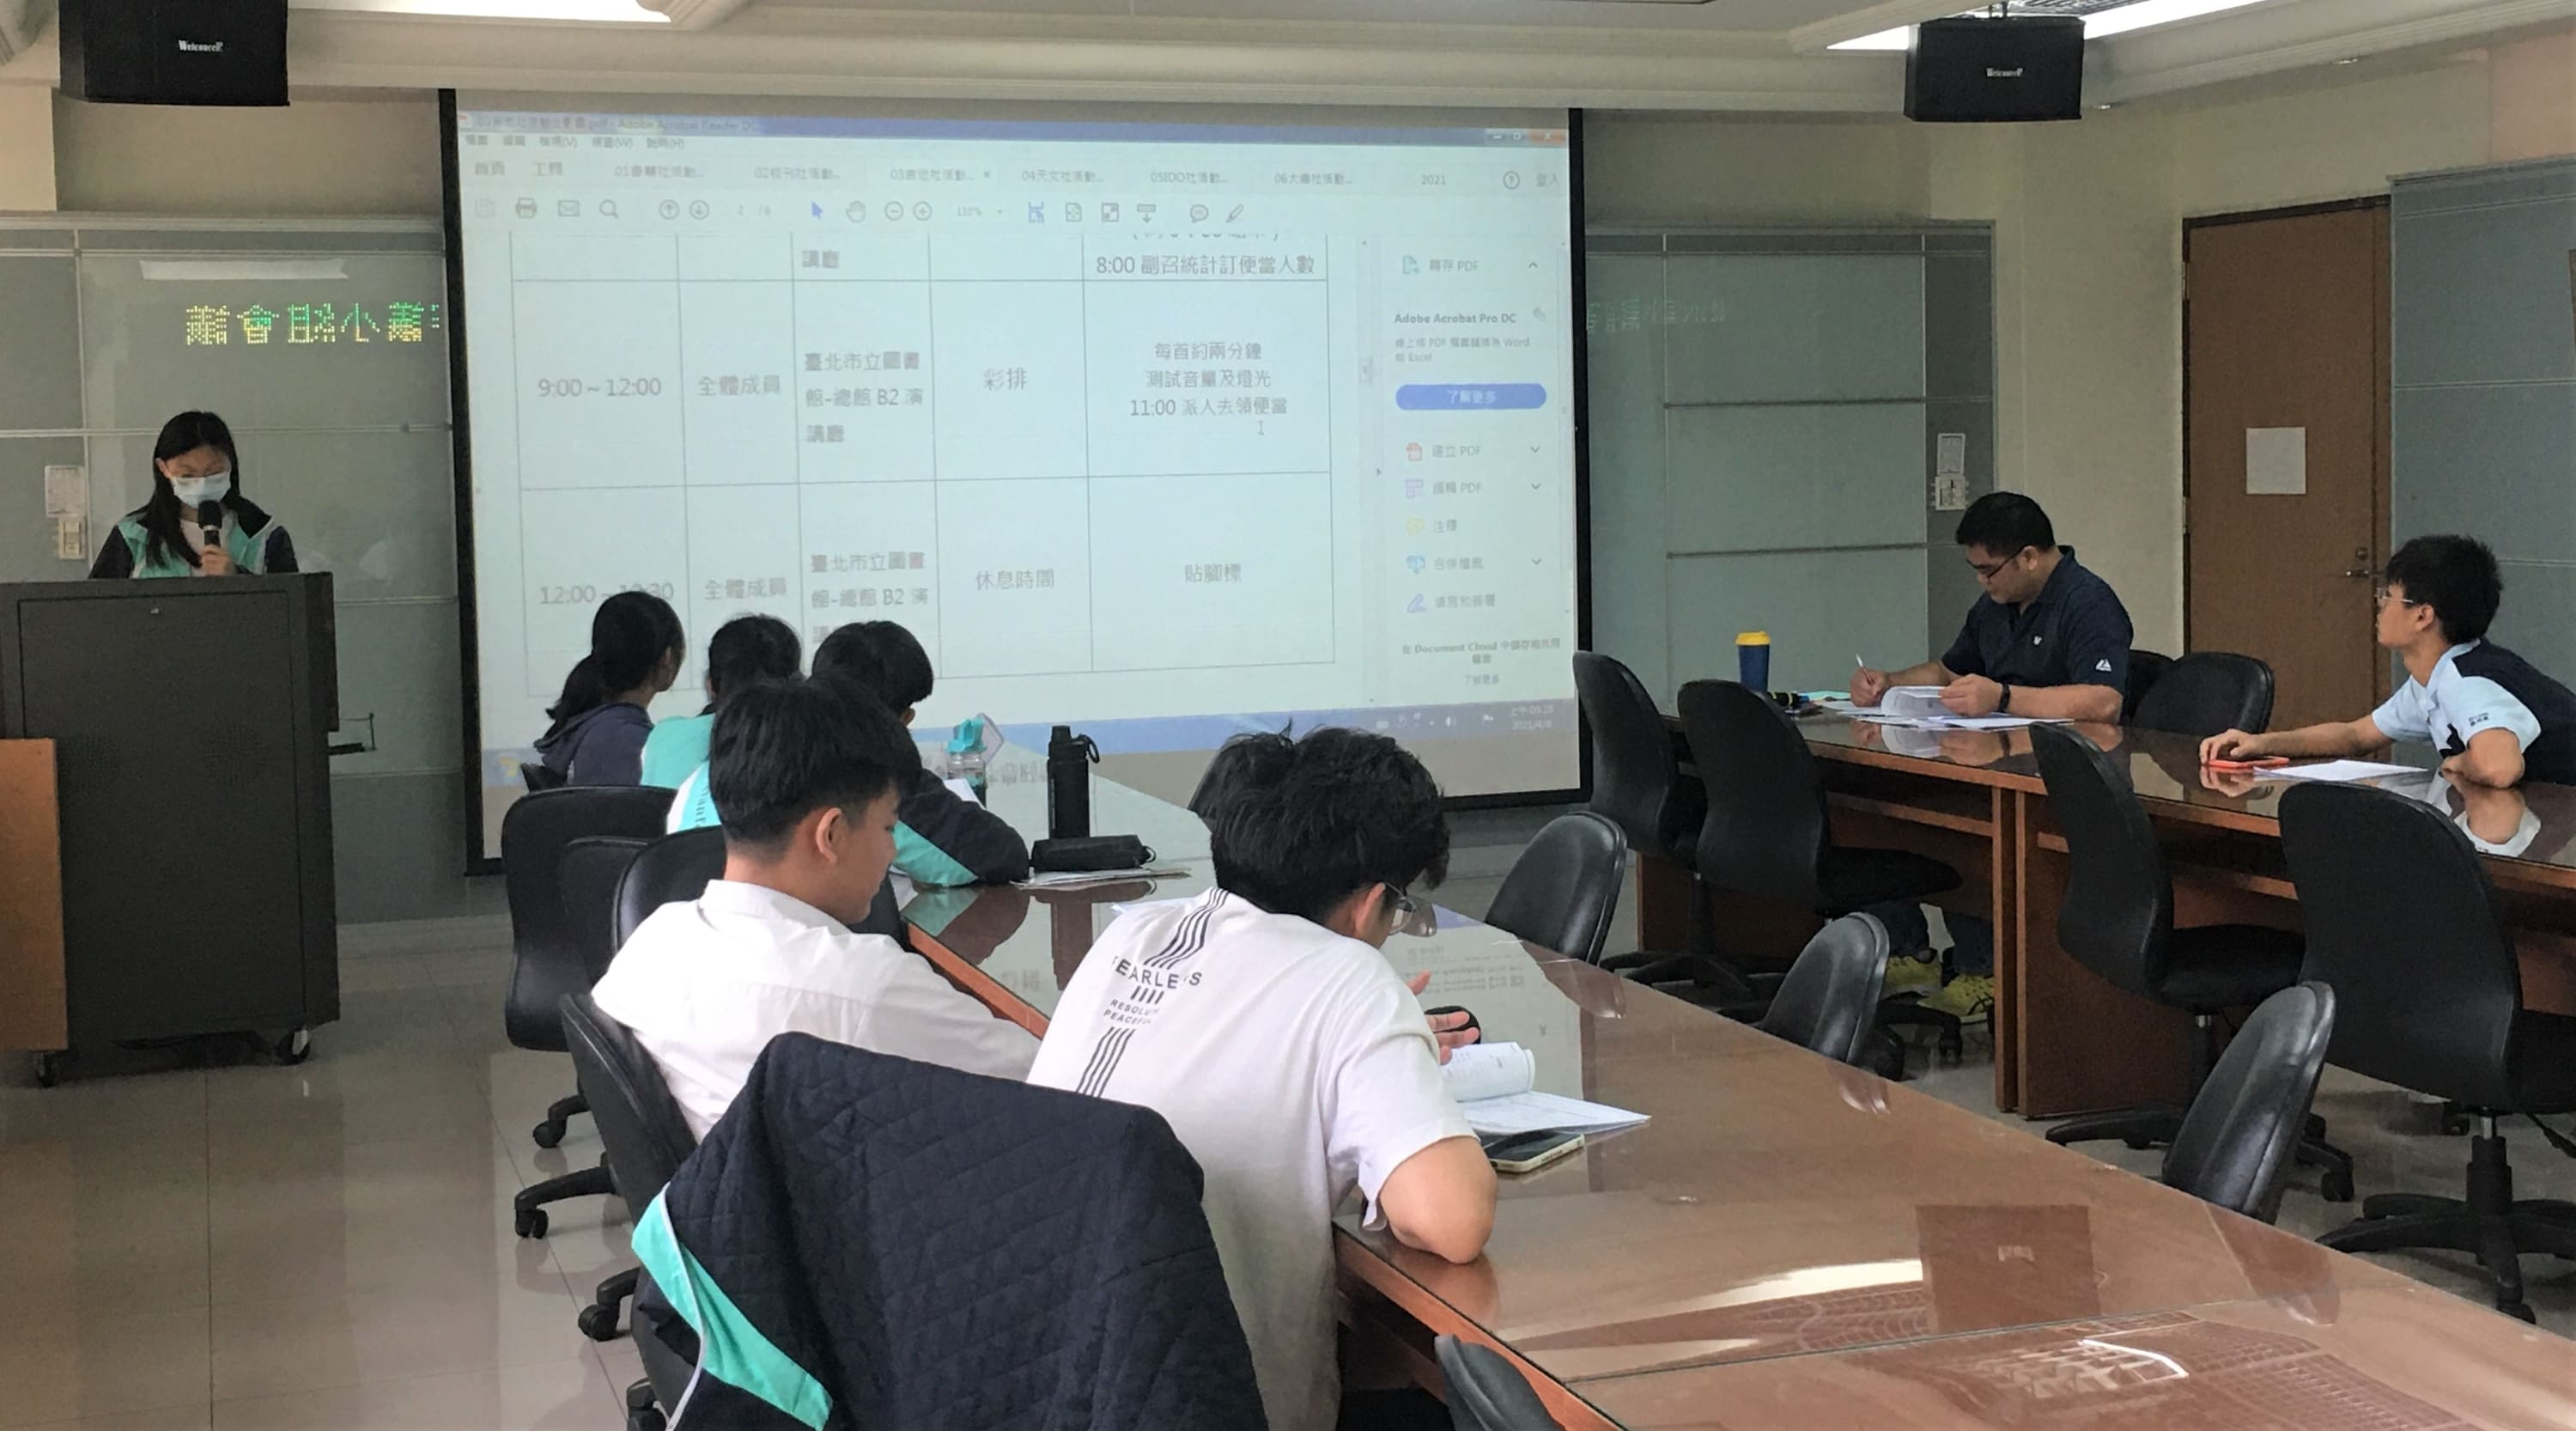 丹鳳高中學生自治組織召開會議審議通過學生社團活動經費補助作業要點資料照 1